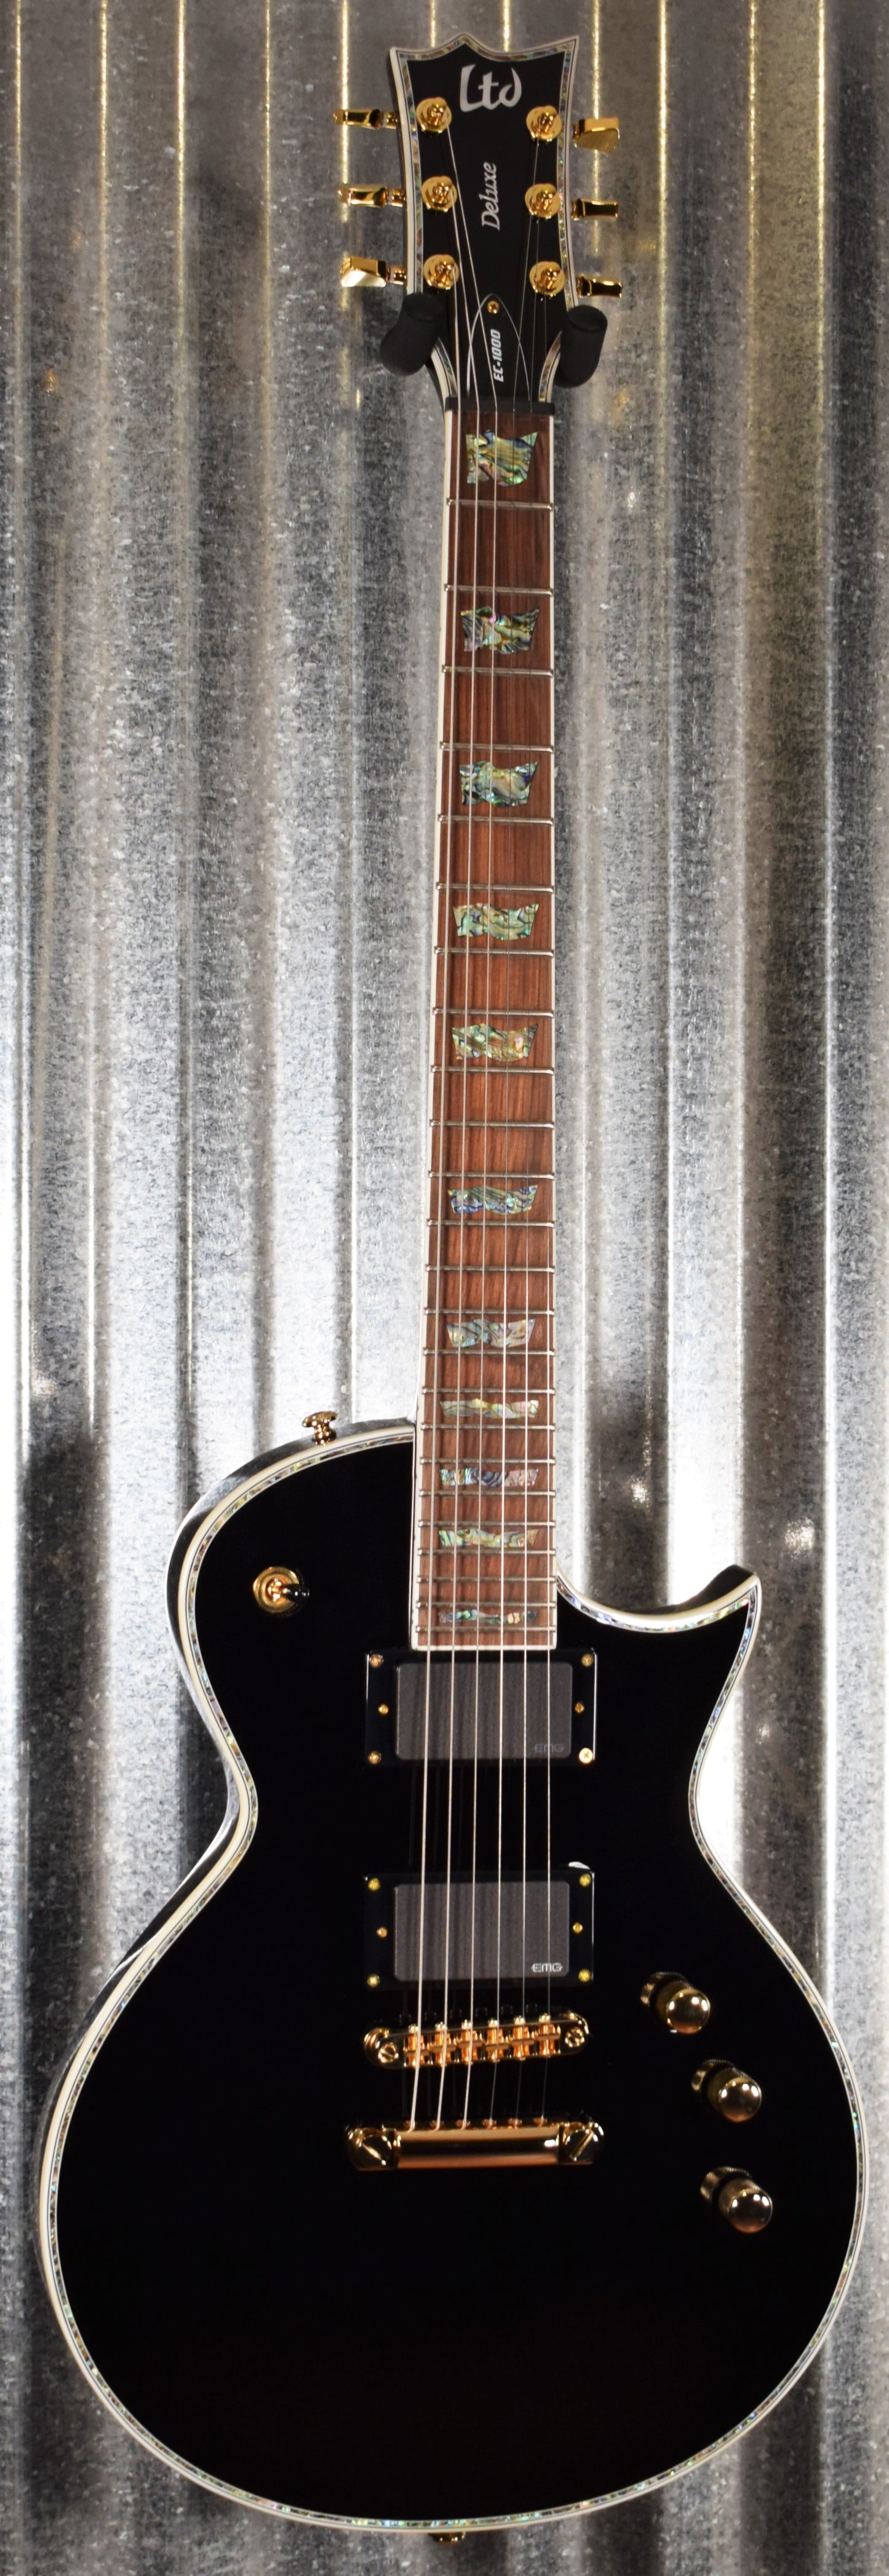 ESP LTD EC-1000 Gloss Black EMG Pickups Guitar LEC1000BLK #2170 Demo